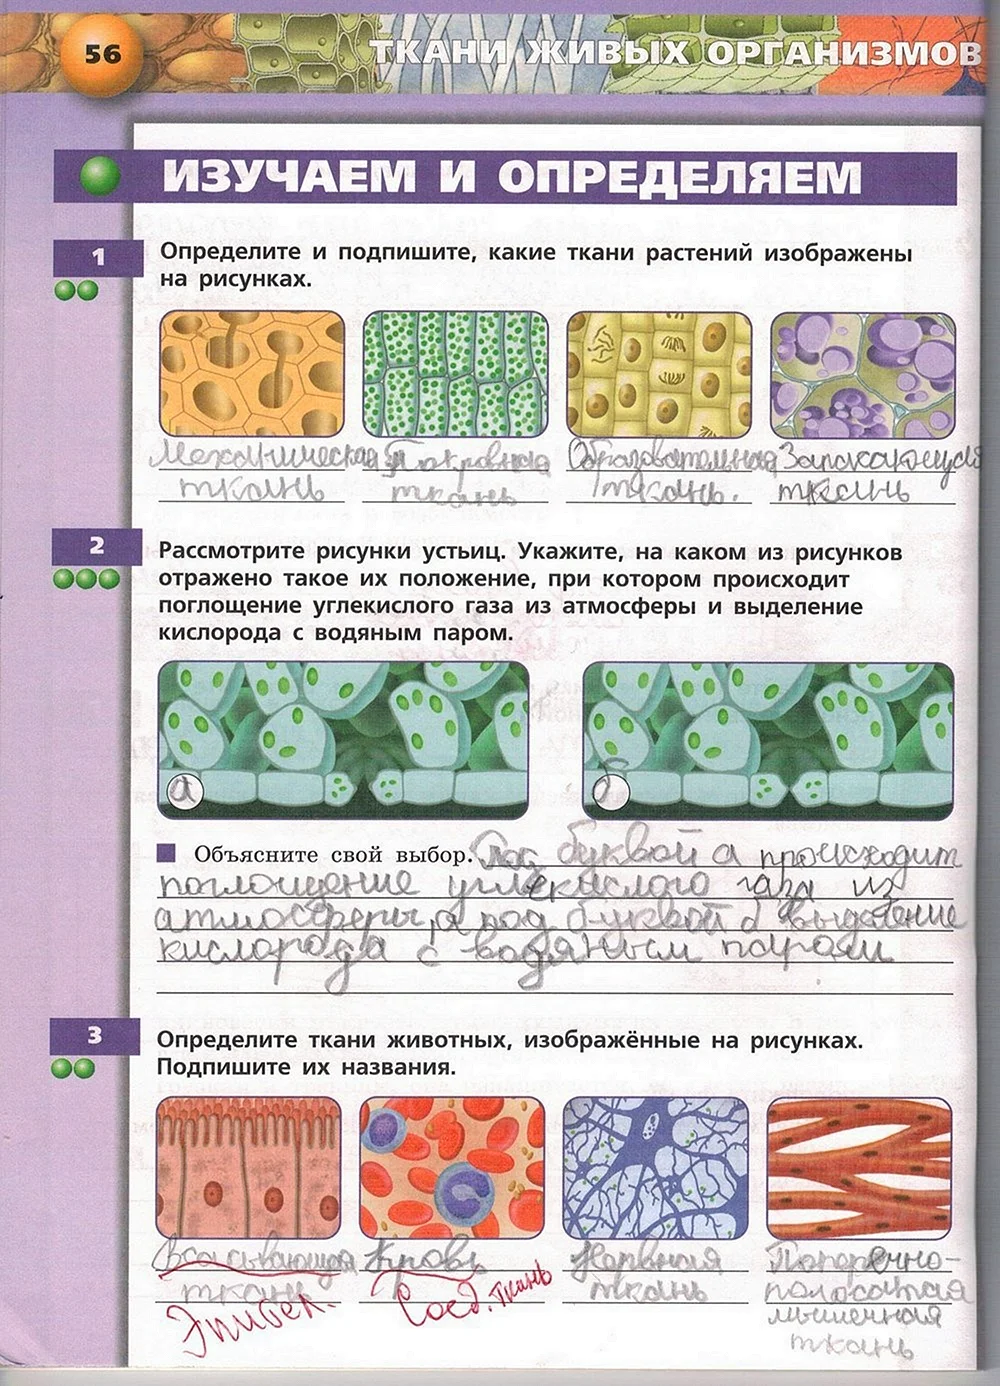 Биология 5 класс ткани животных и ткани растений